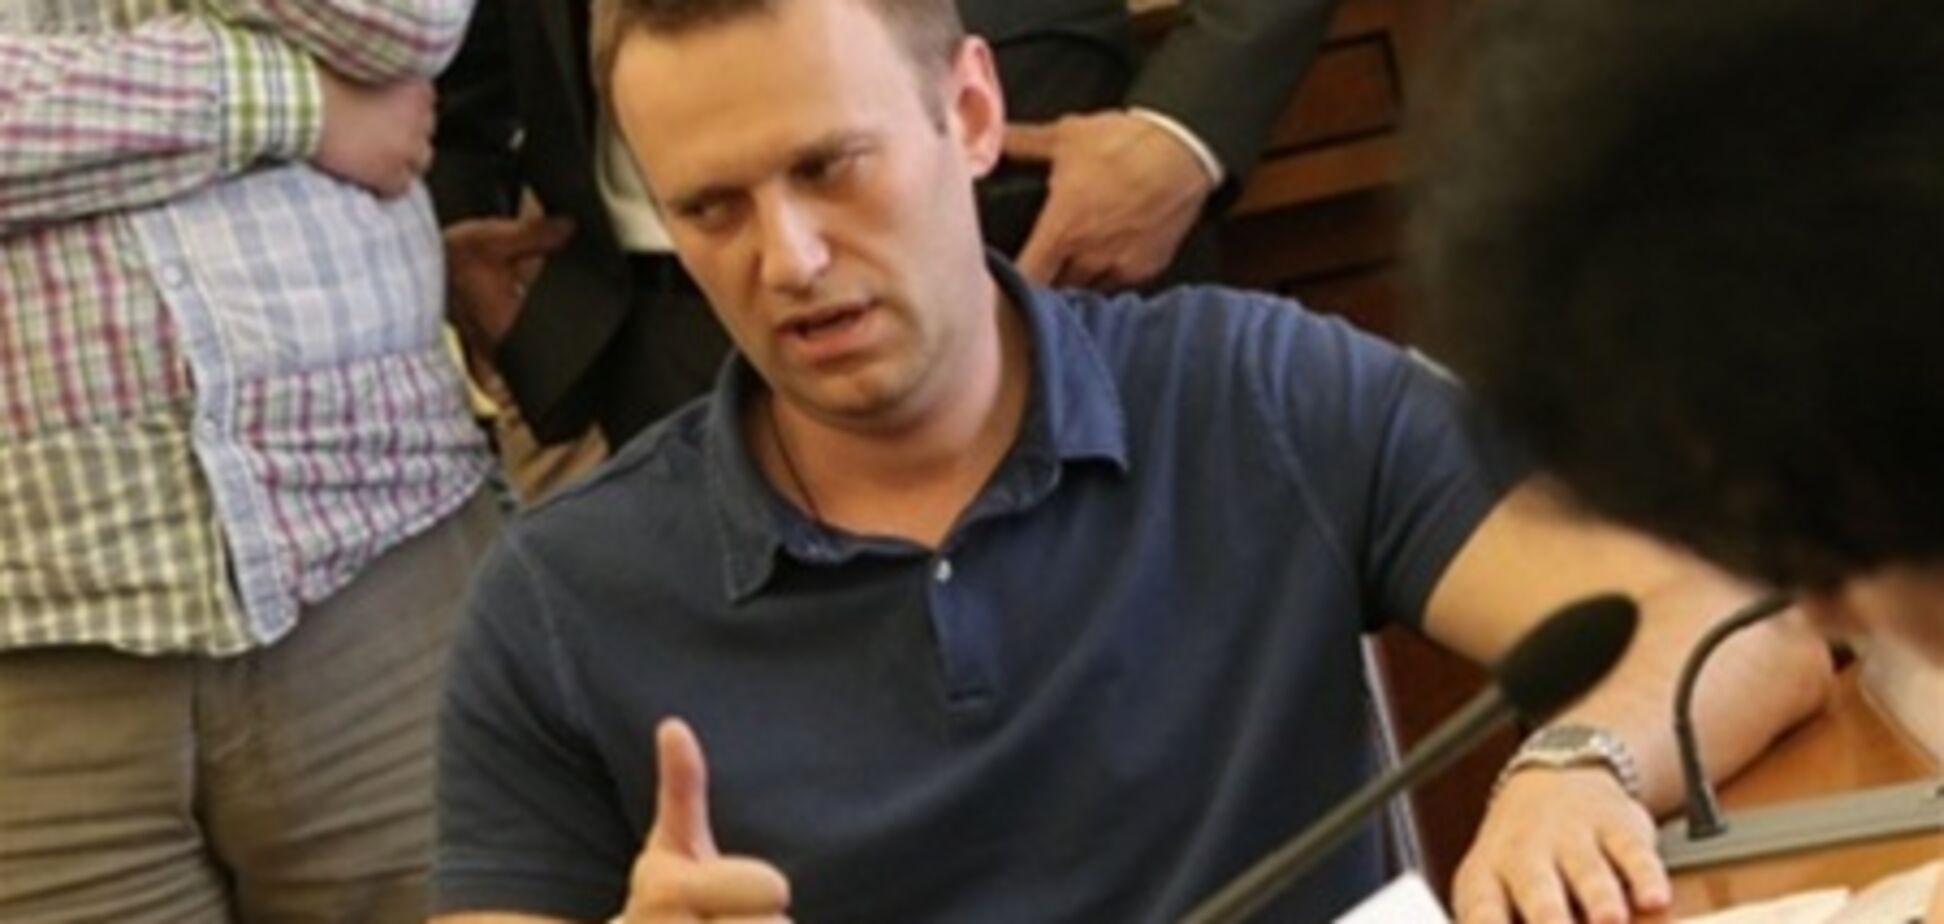 Власти пока не будут обсуждать снятие Навального с выборов мэра Москвы